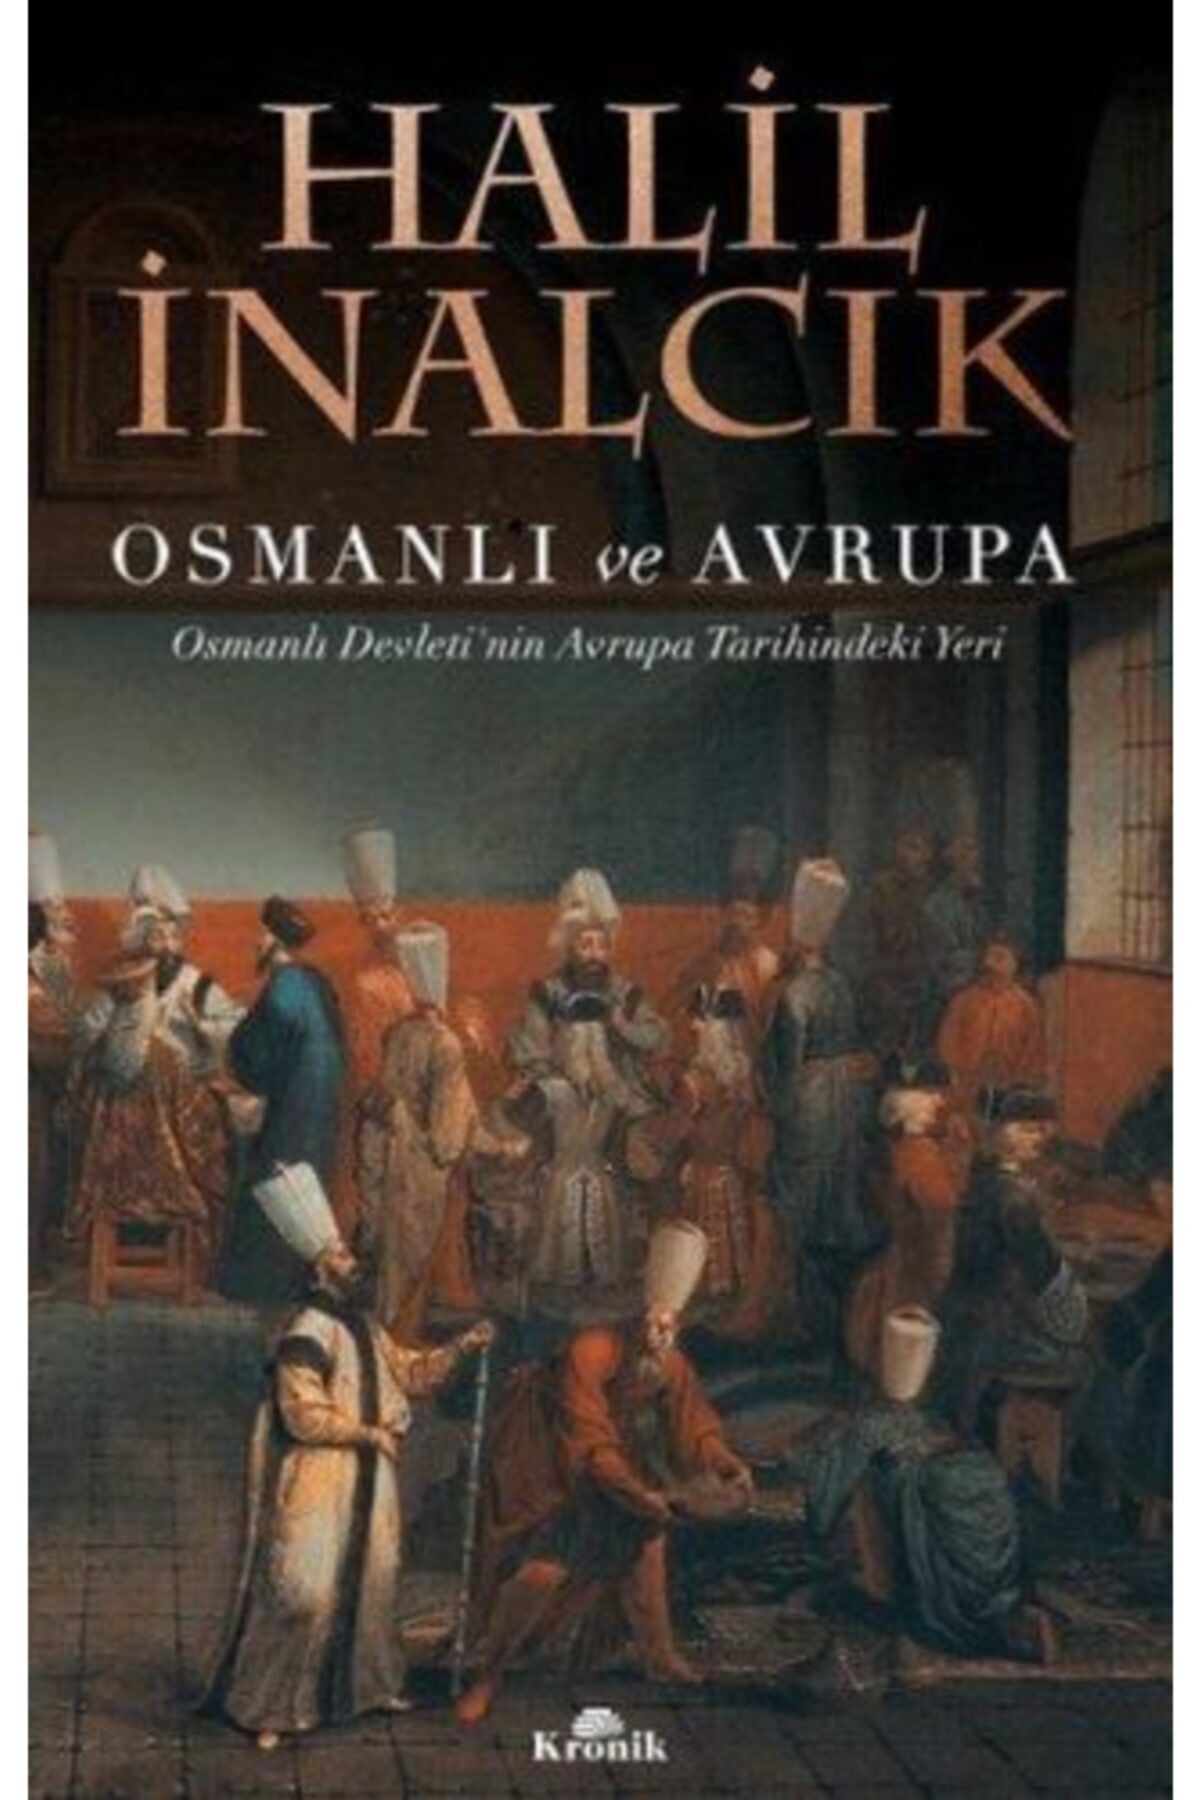 Kronik Kitap Osmanlı Ve Avrupa Halil Inalcık - Halil Inalcık